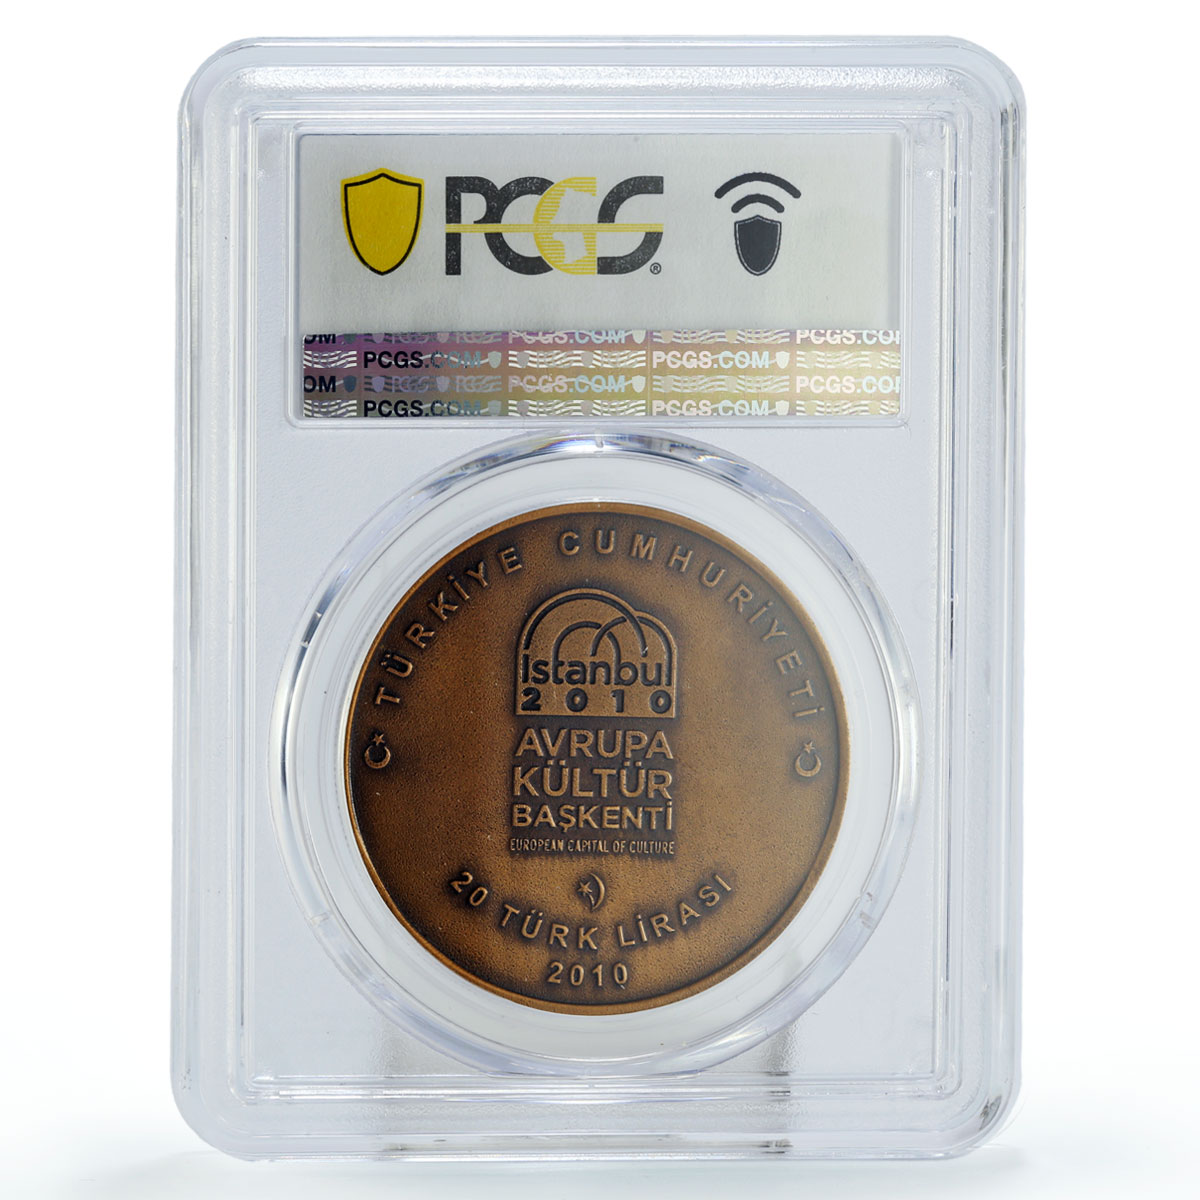 Turkiye 20 lira Culture European Capital Istanbul MS69 PCGS bronze coin 2010